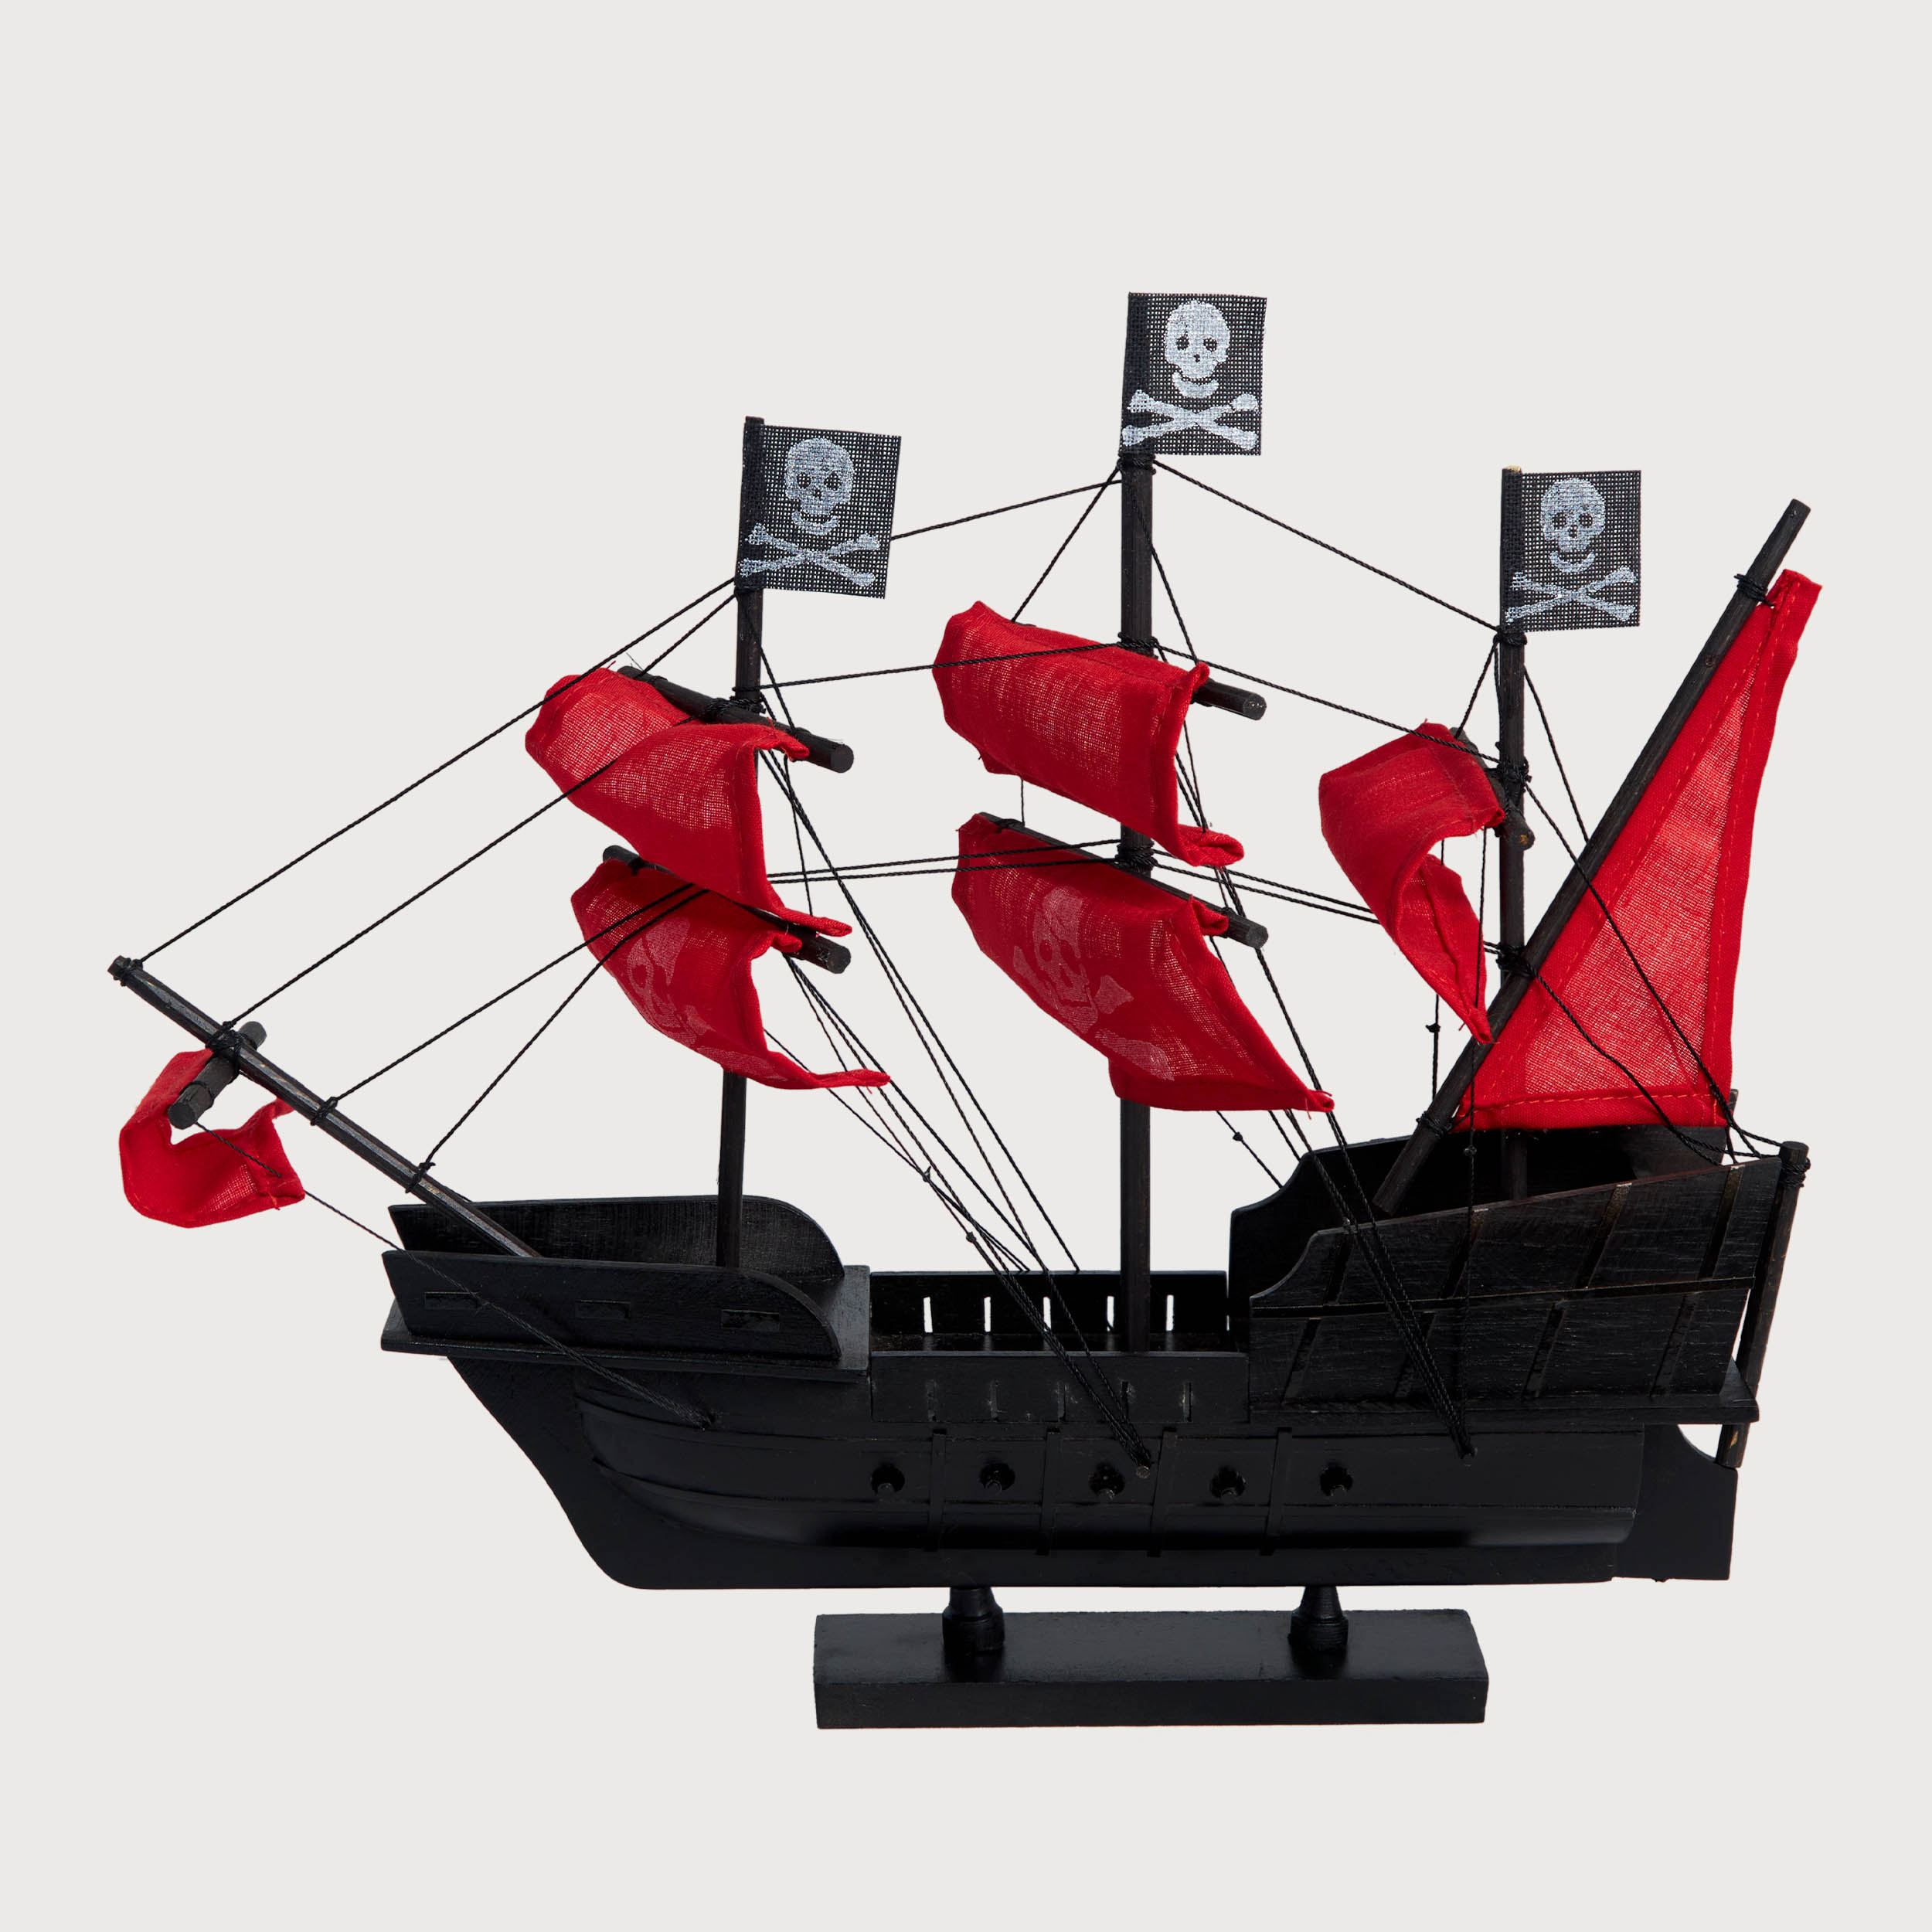 Mô hình Thuyền Cổ BLACK PEARL/ Red cao cấp, mô hình gỗ tự nhiên, lắp ráp sẵn 1st FURNITURE bằng gỗ tự nhiên cao câ